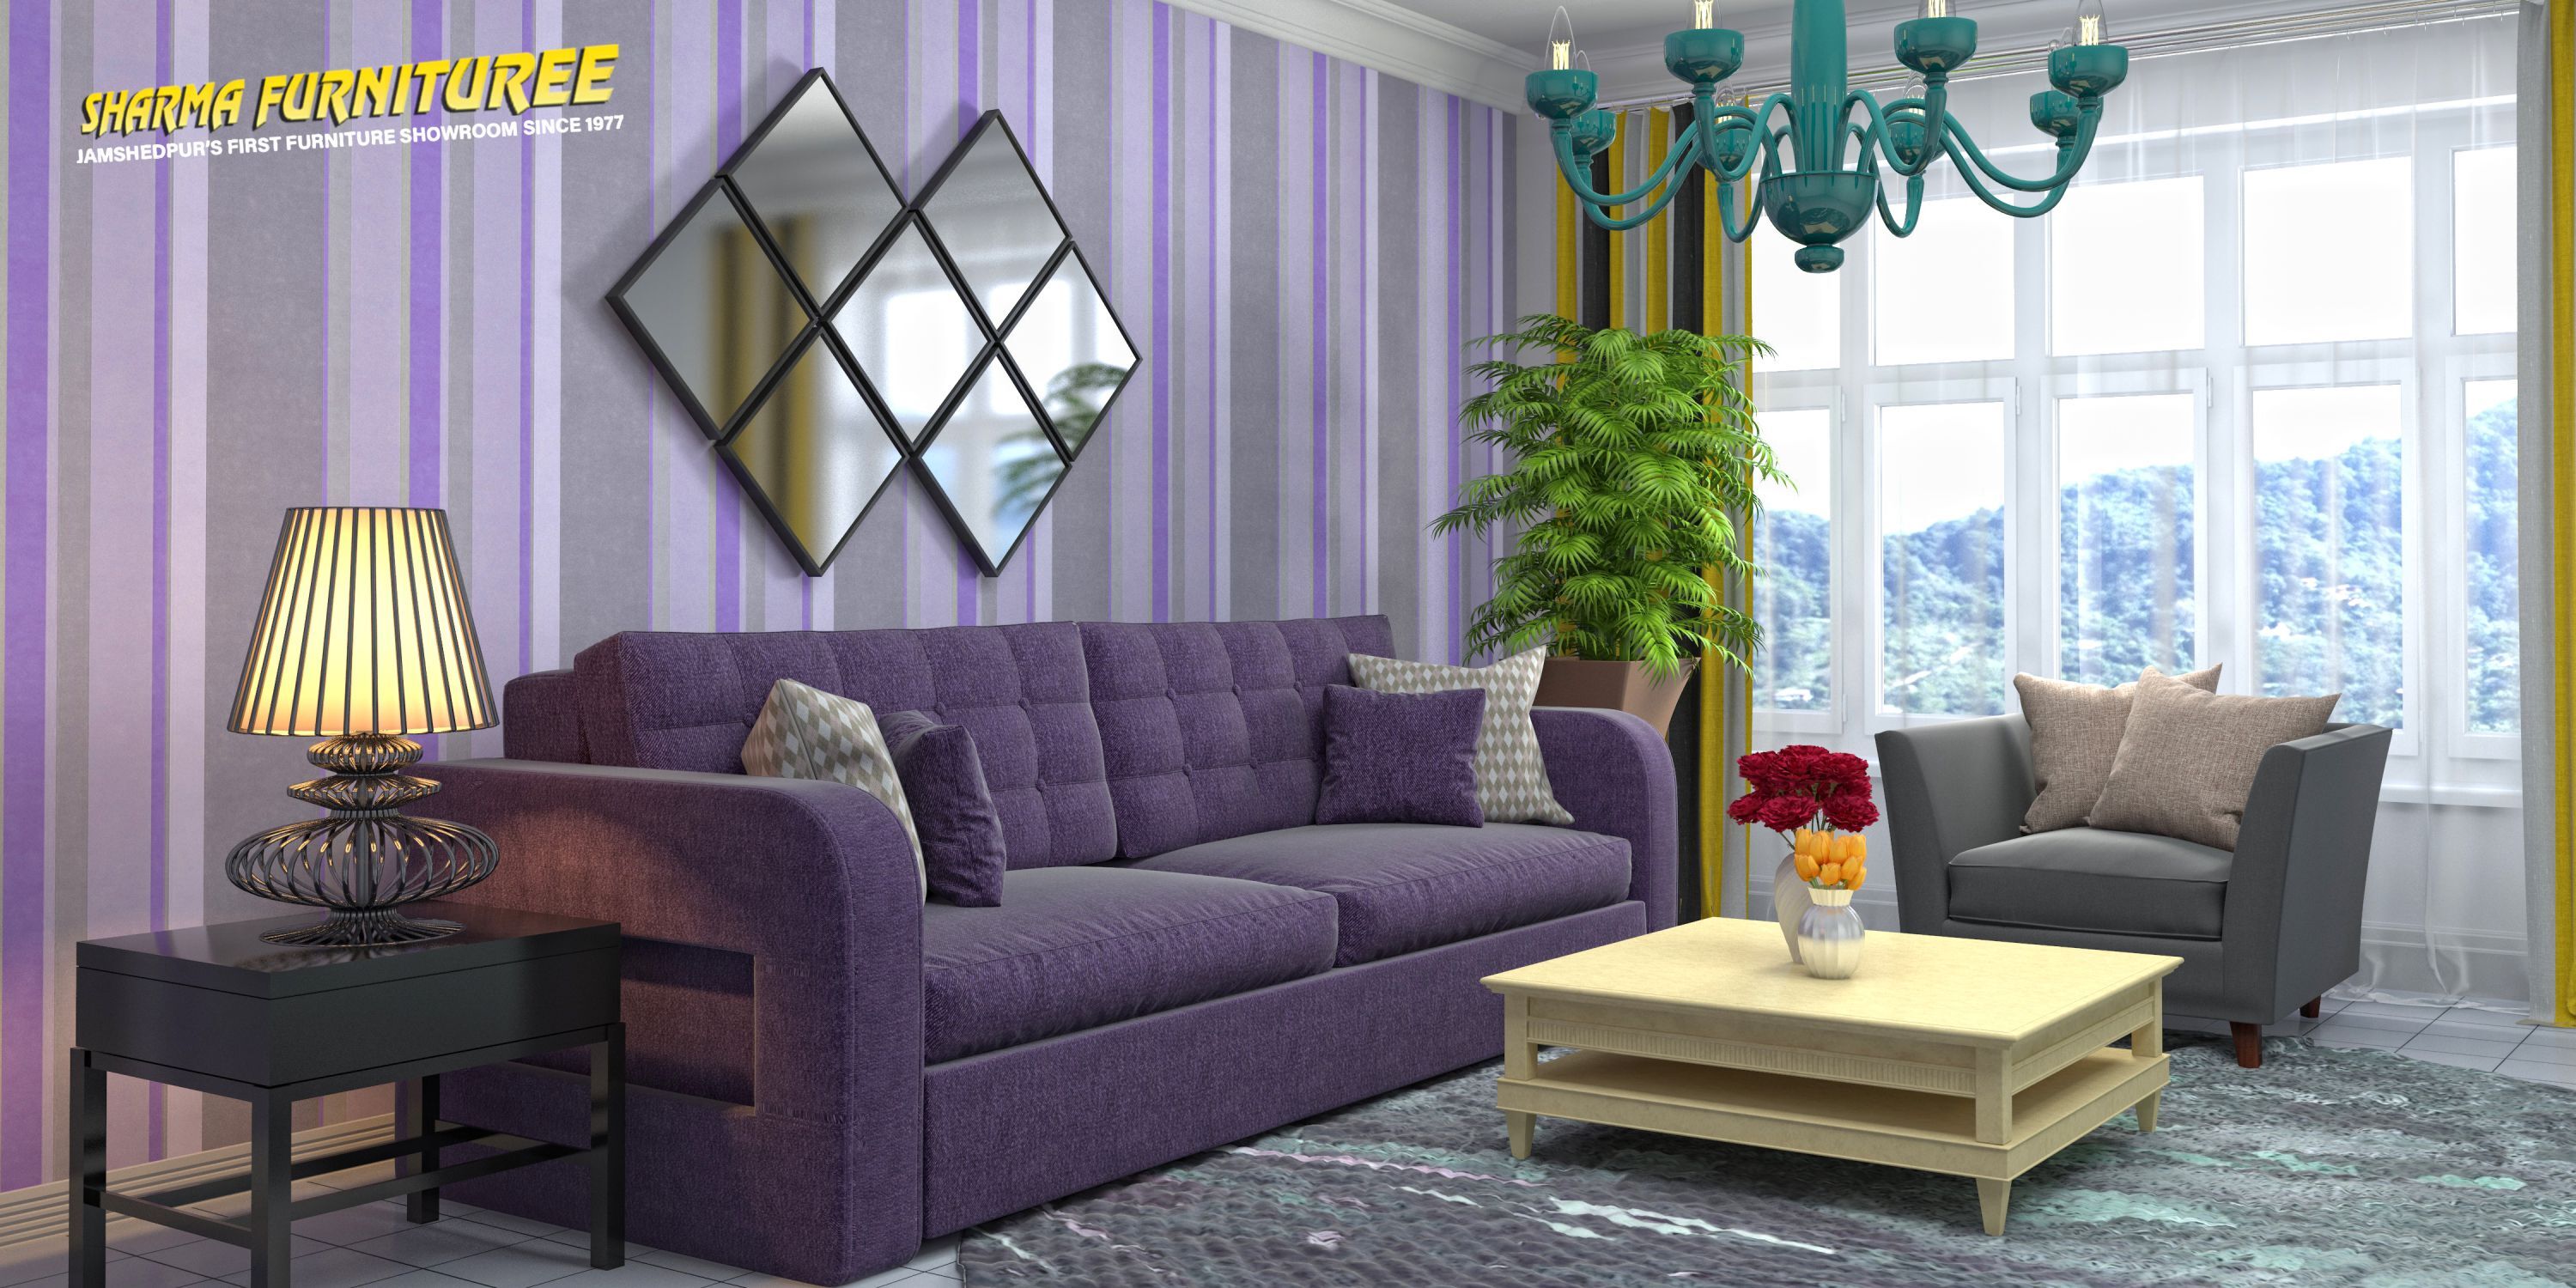 Perfect Lavender Sofa in Jamshedpur